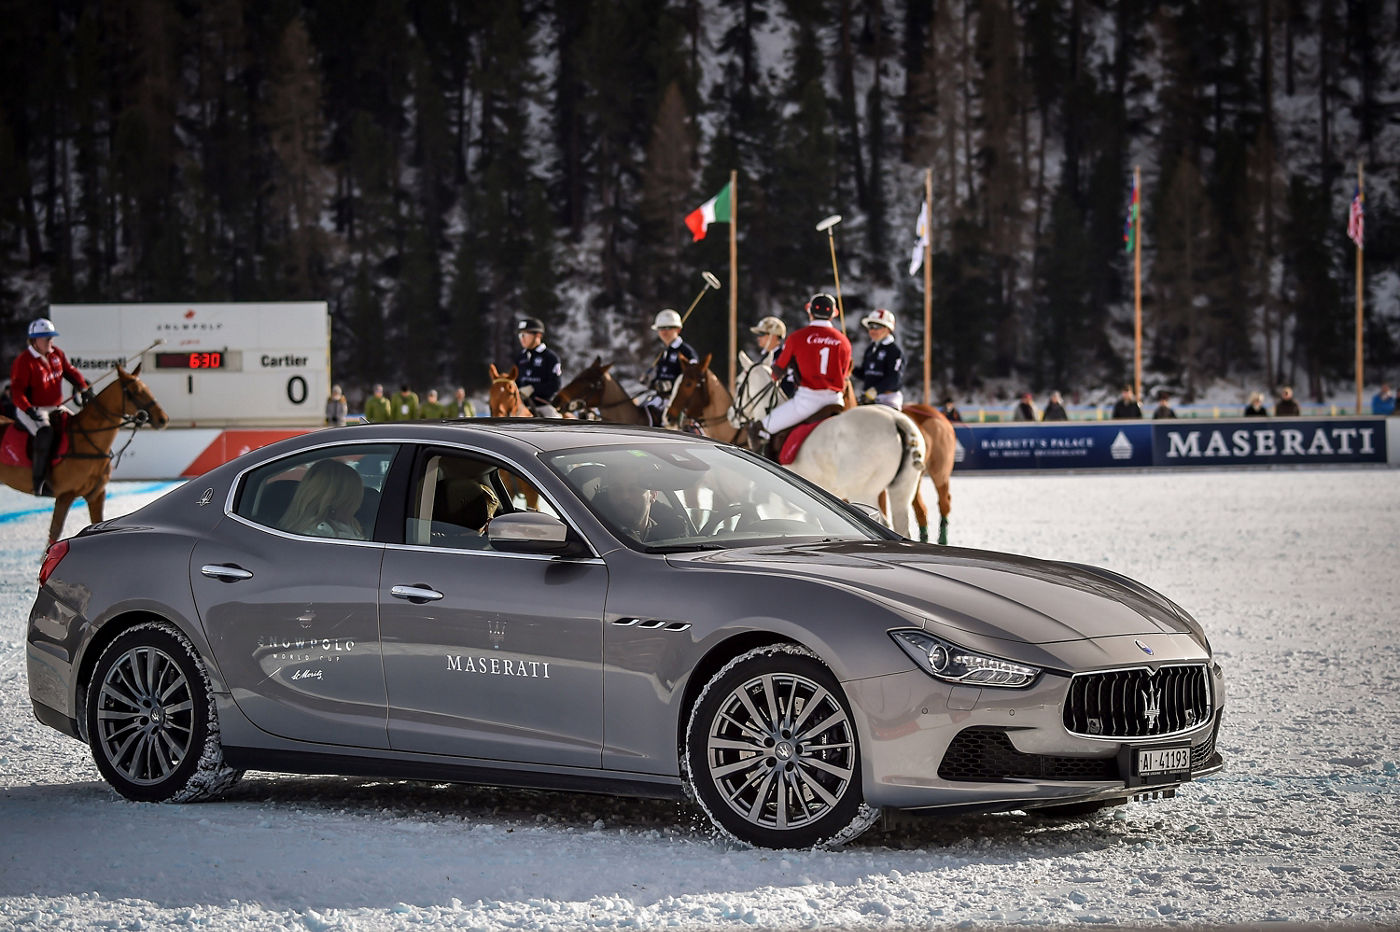 Jugadores de polo en fila dentro del campo en la nieve detrás de un Maserati